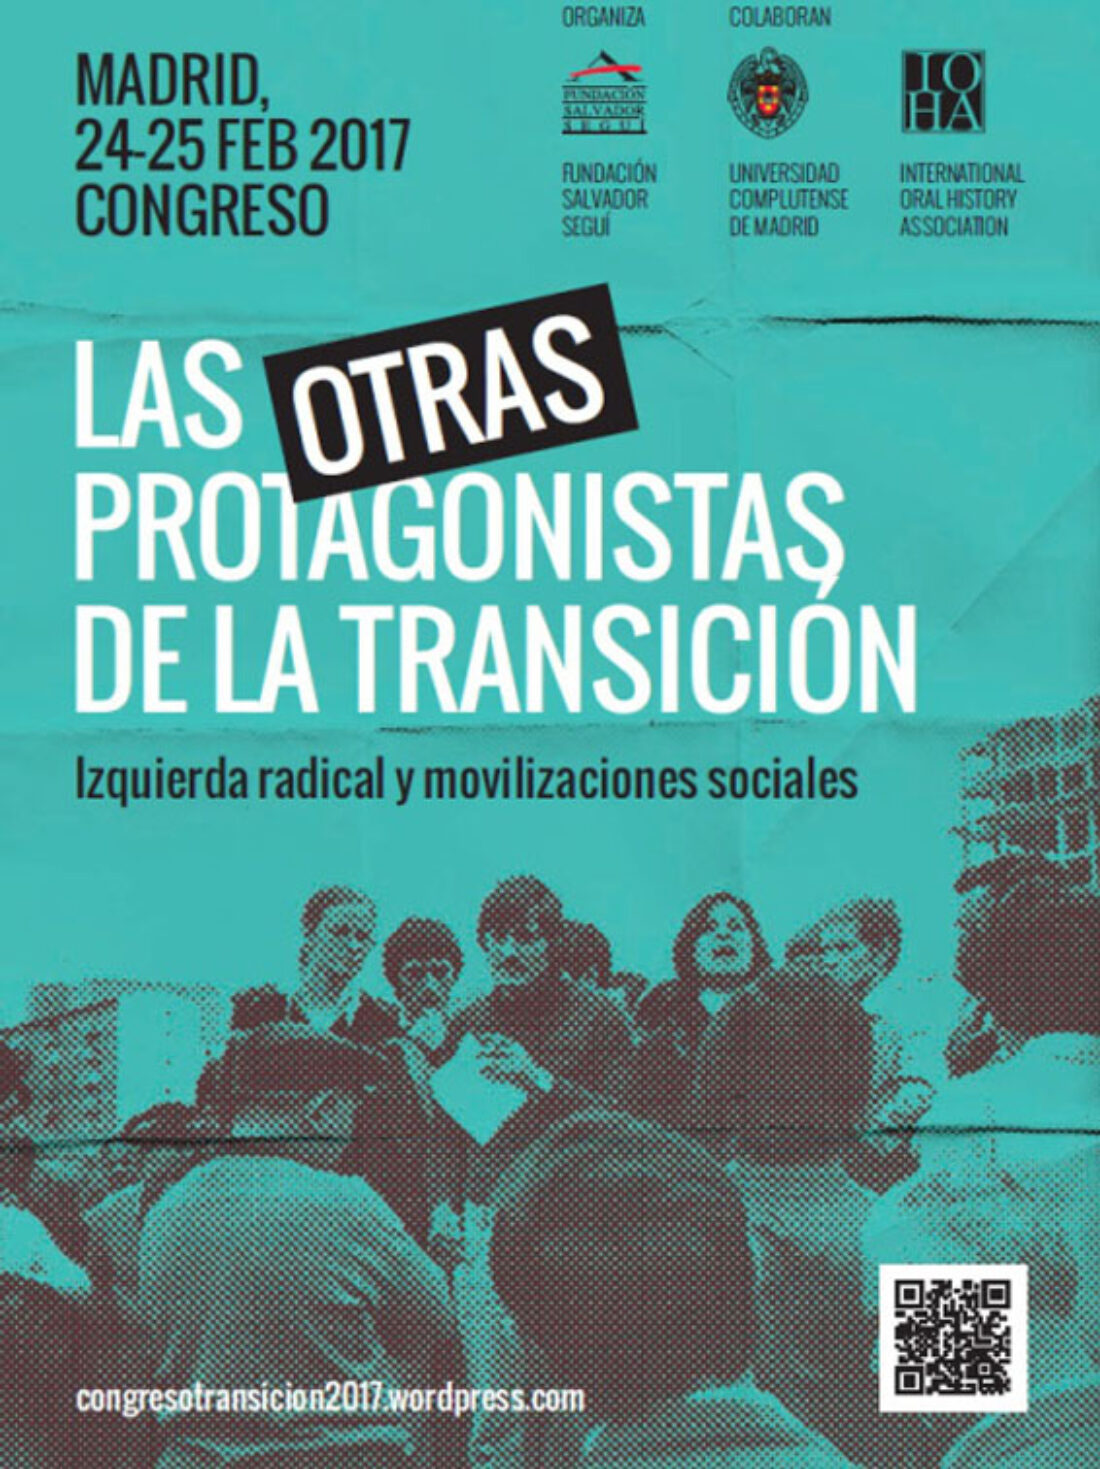 Congreso Fundación Salvador Seguí